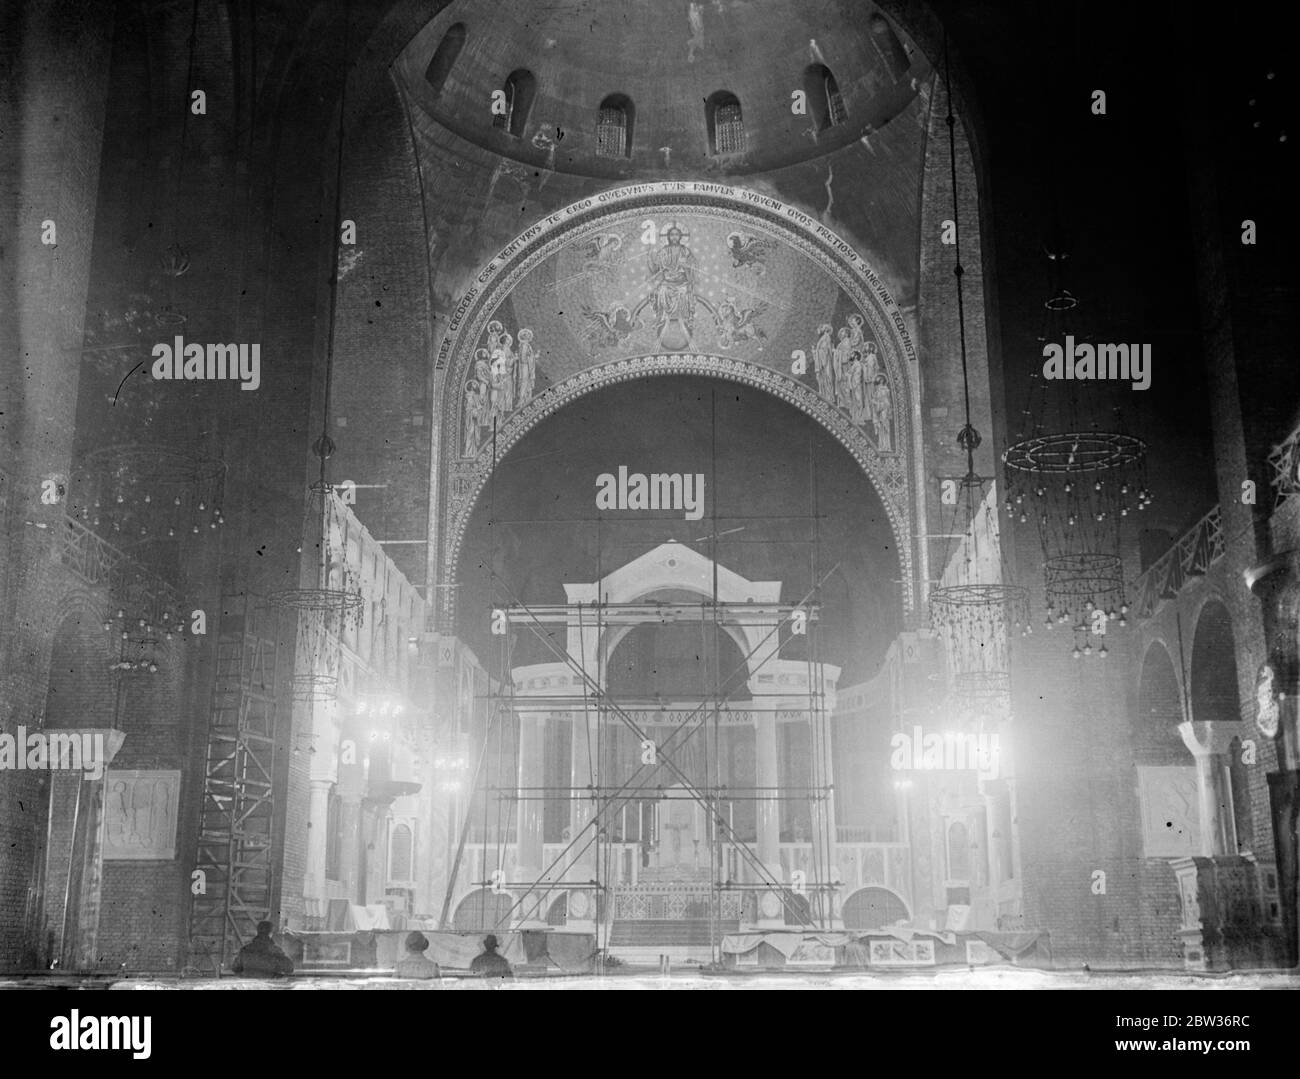 Westminster Cathedral Mosaiken zum ersten Mal beleuchtet. Die Mosaike, die vor kurzem in der Westminster Cathedral, London, wurden zum ersten Mal beleuchtet, so dass die Öffentlichkeit konnte sie inspizieren. Die gesamte Arbeit wird in zehn Jahren abgeschlossen sein. Es wird von speziell aus Italien mitgebrachten Experten durchgeführt. Foto zeigt ; das Flutlicht Mosaik auf dem Tympanon über dem Baldachino in der Westminster Cathedral . 27. November 1933 Stockfoto